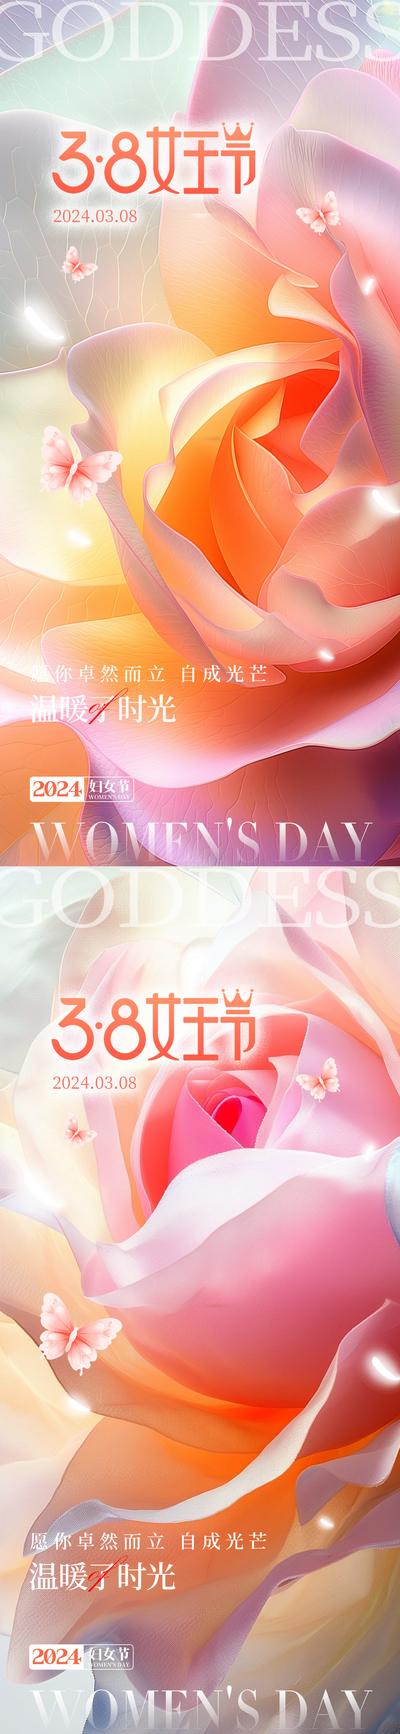 南门网 广告 海报 医美 妇女节 系列 倒计时 公历节日 38 节日 女神节 唯美 浪漫 花朵 三八 女性